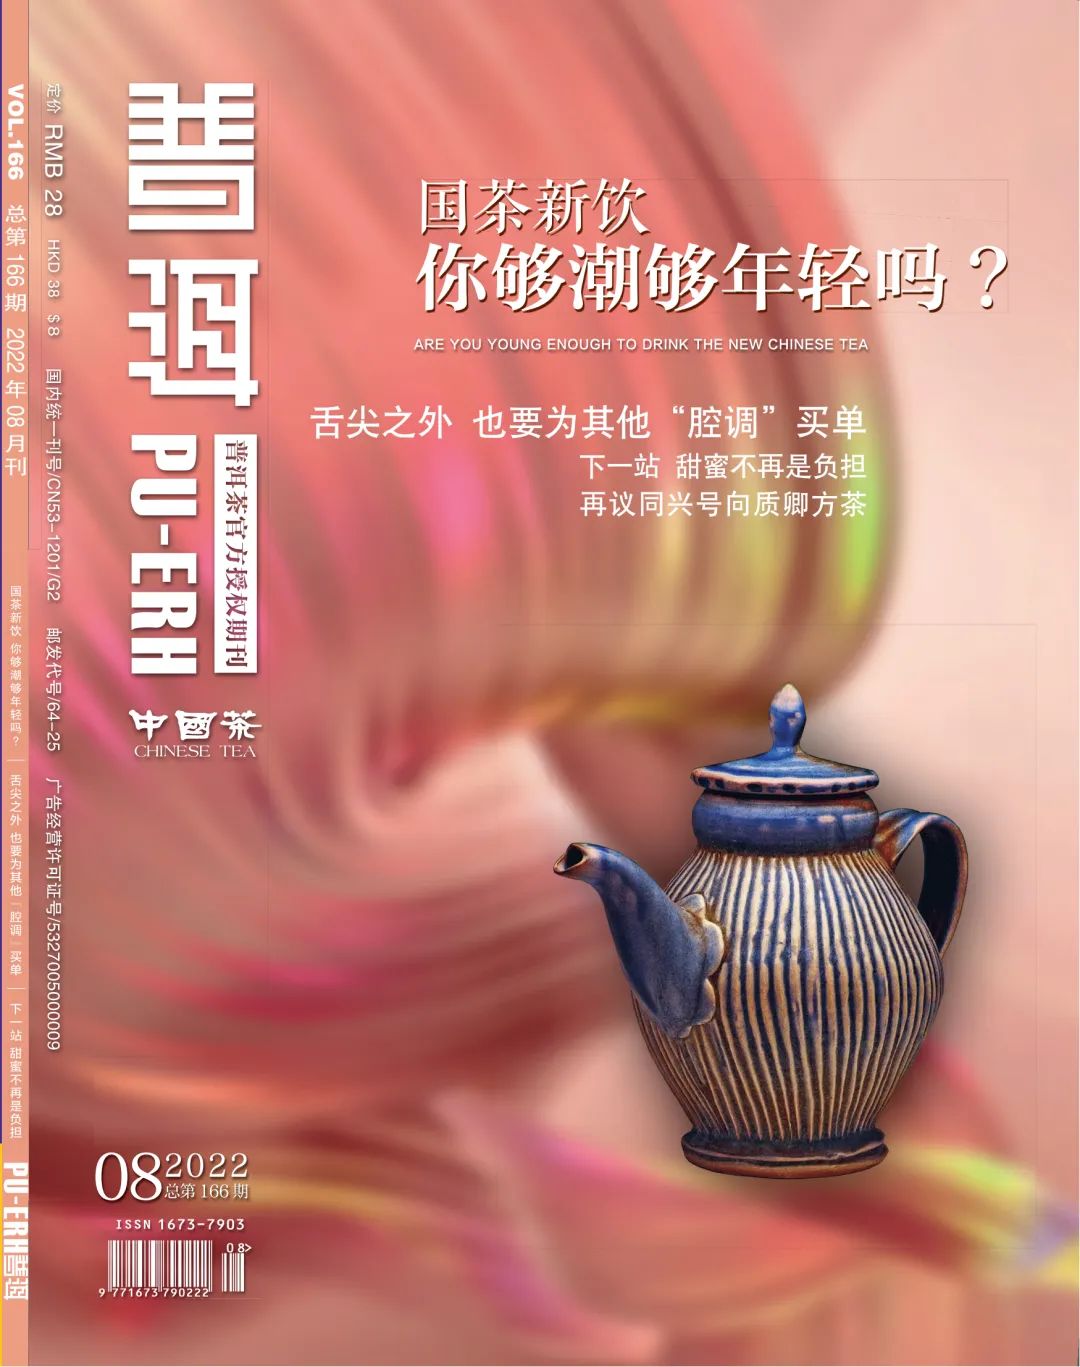 8月刊丨国茶新饮 你够潮 够年轻吗？